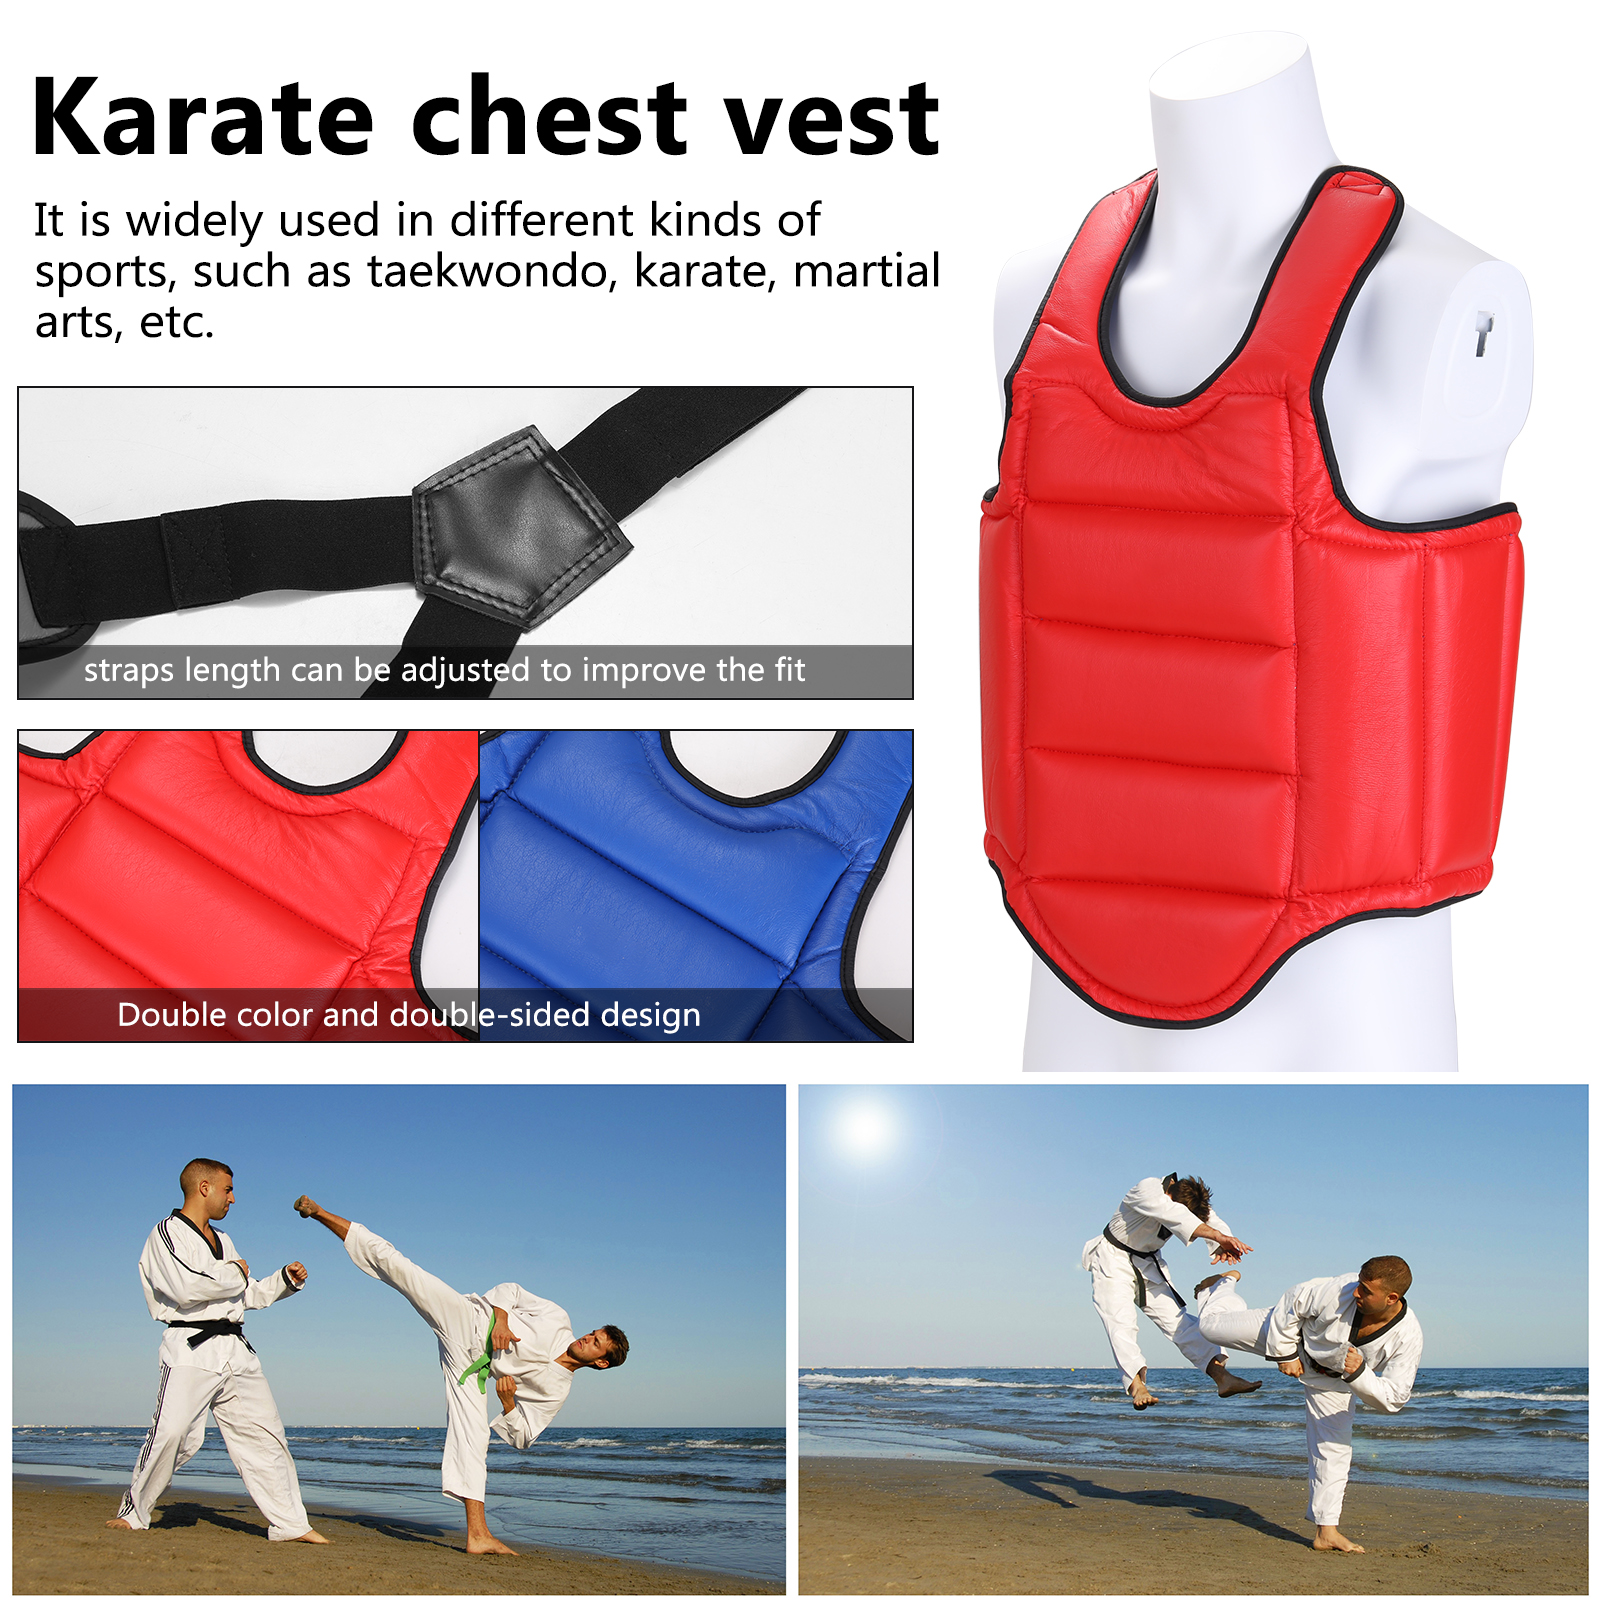 Áo giáp cho người học võ karate, taekwondo giúp bảo vệ ngực